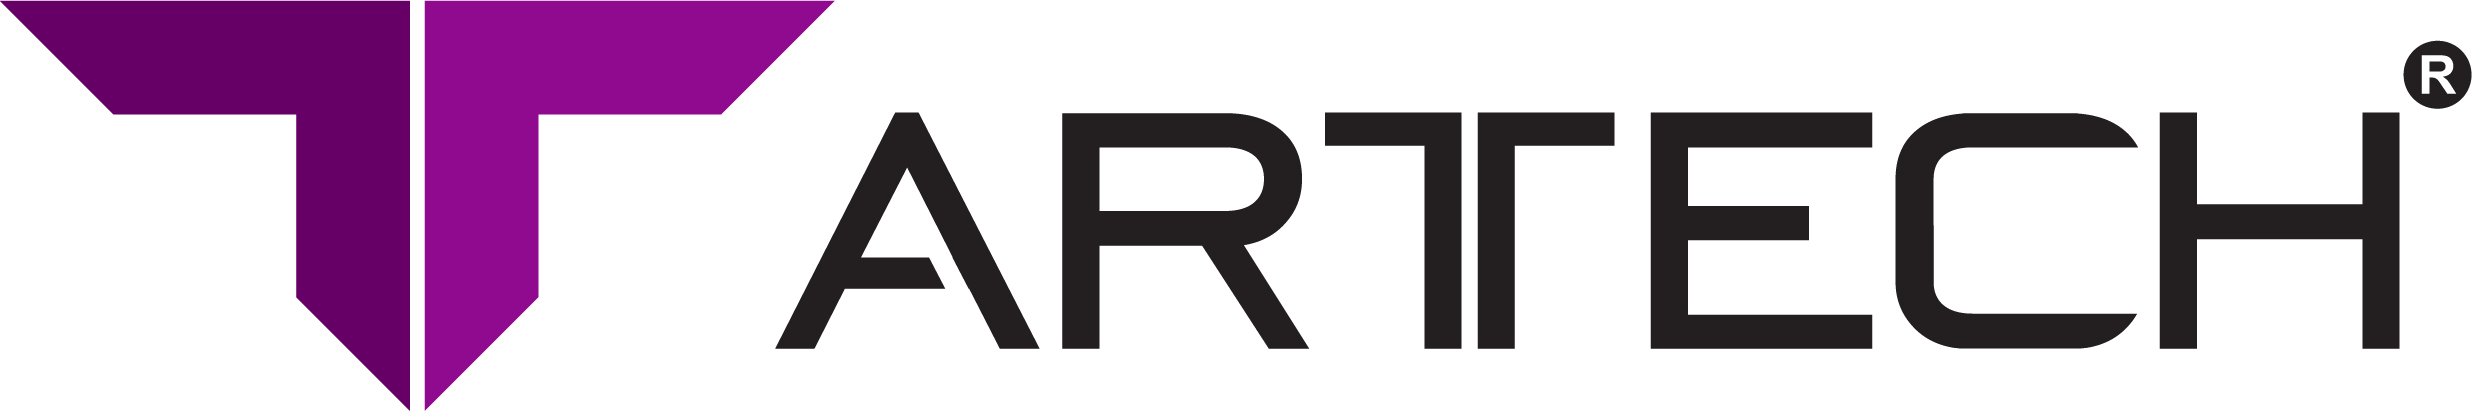 arttech logo